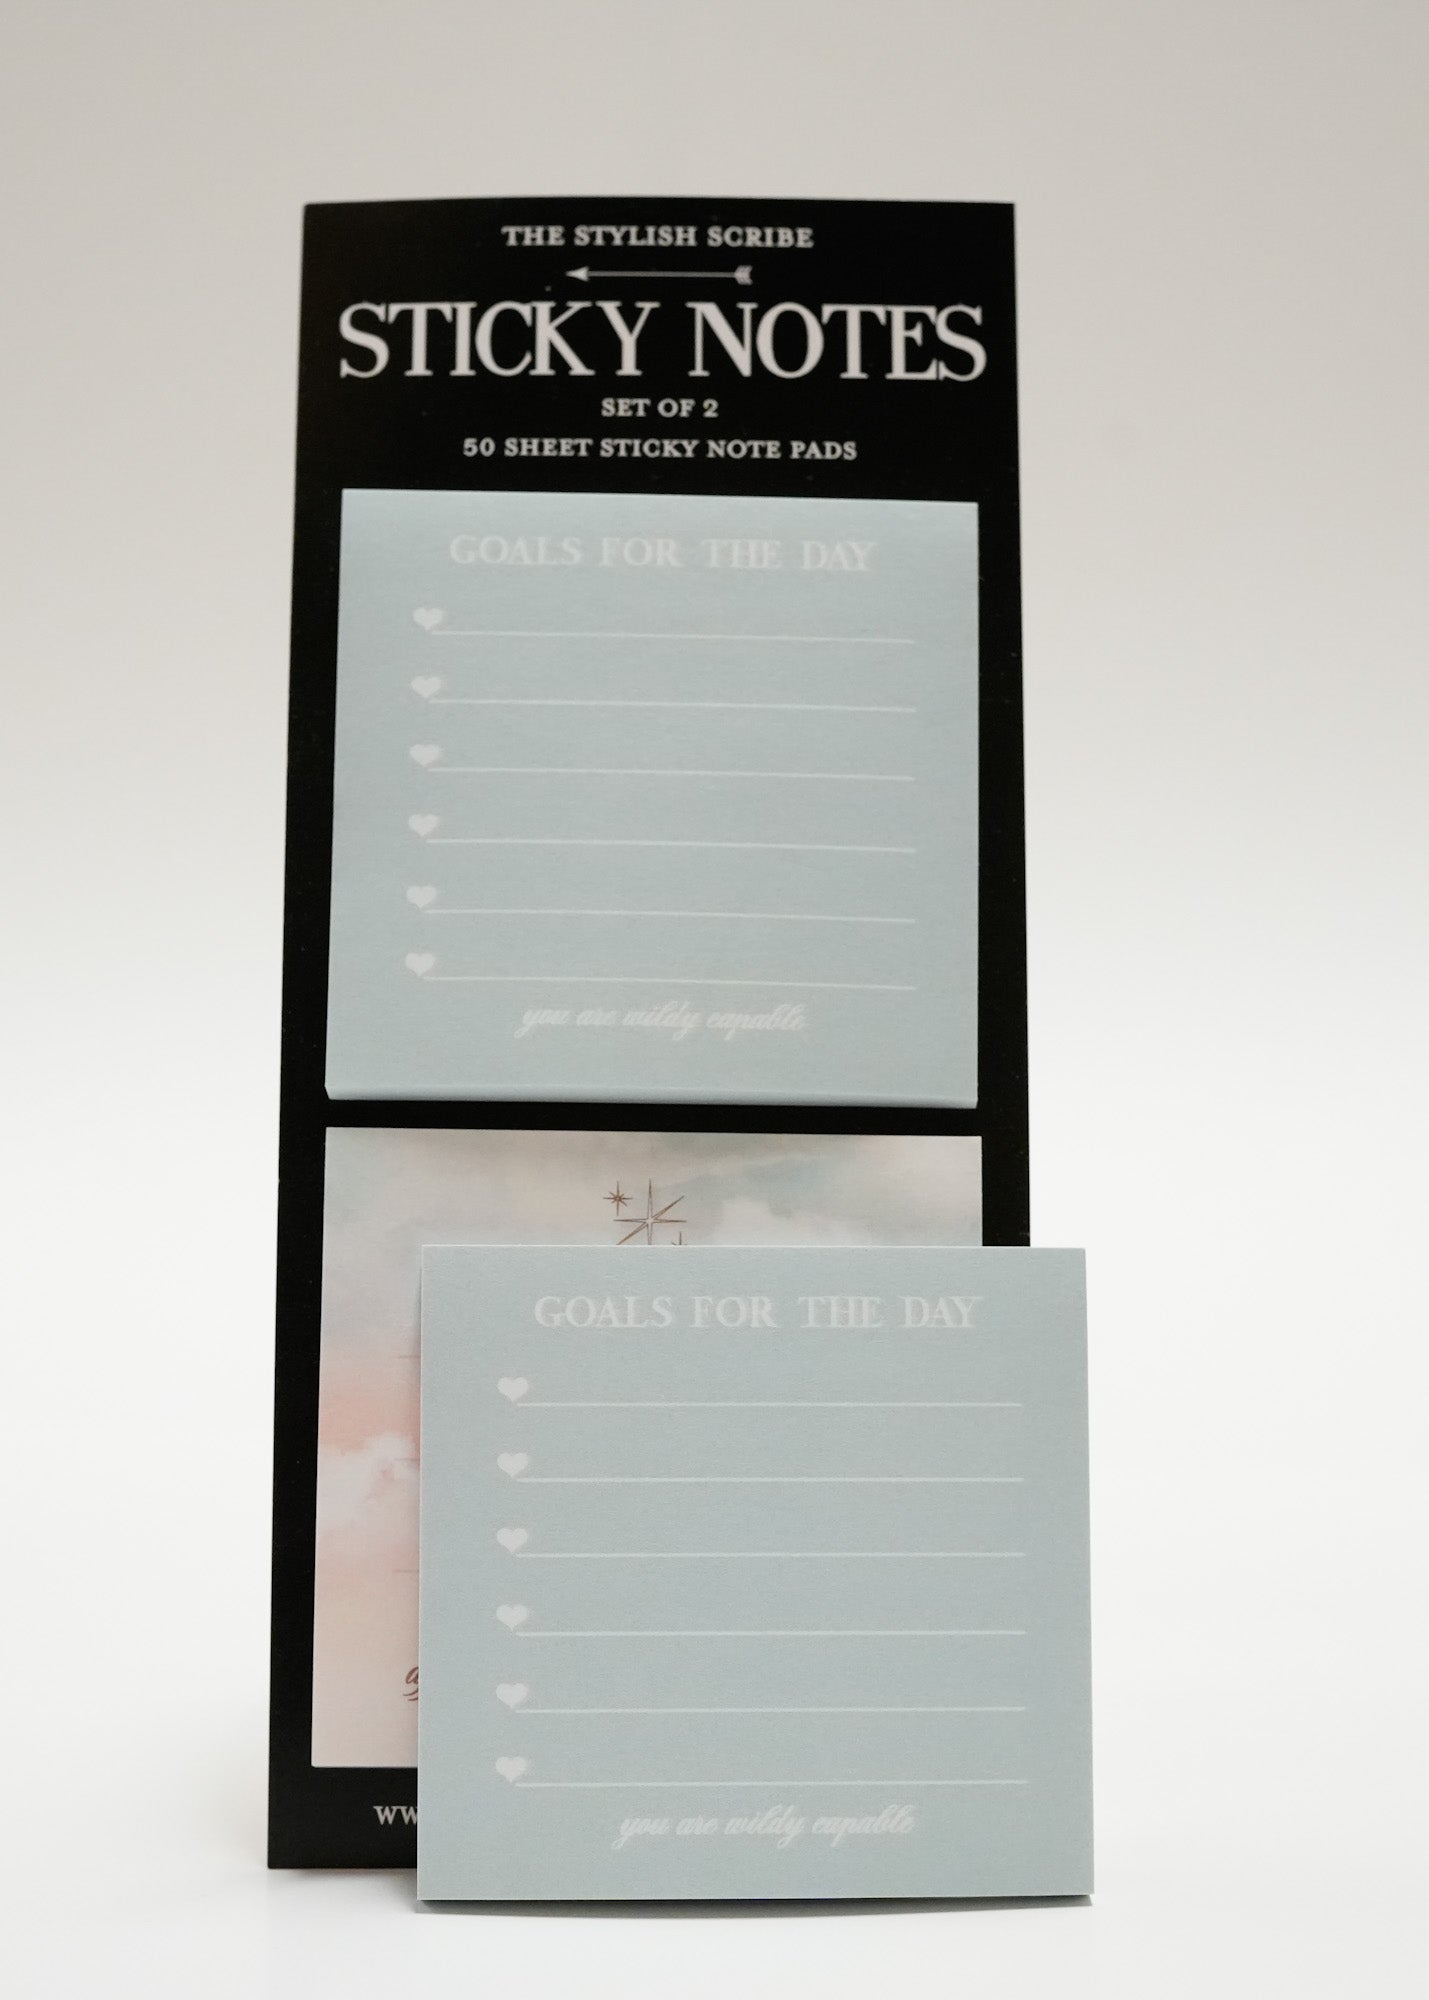 Daily Affirmation sticky note set